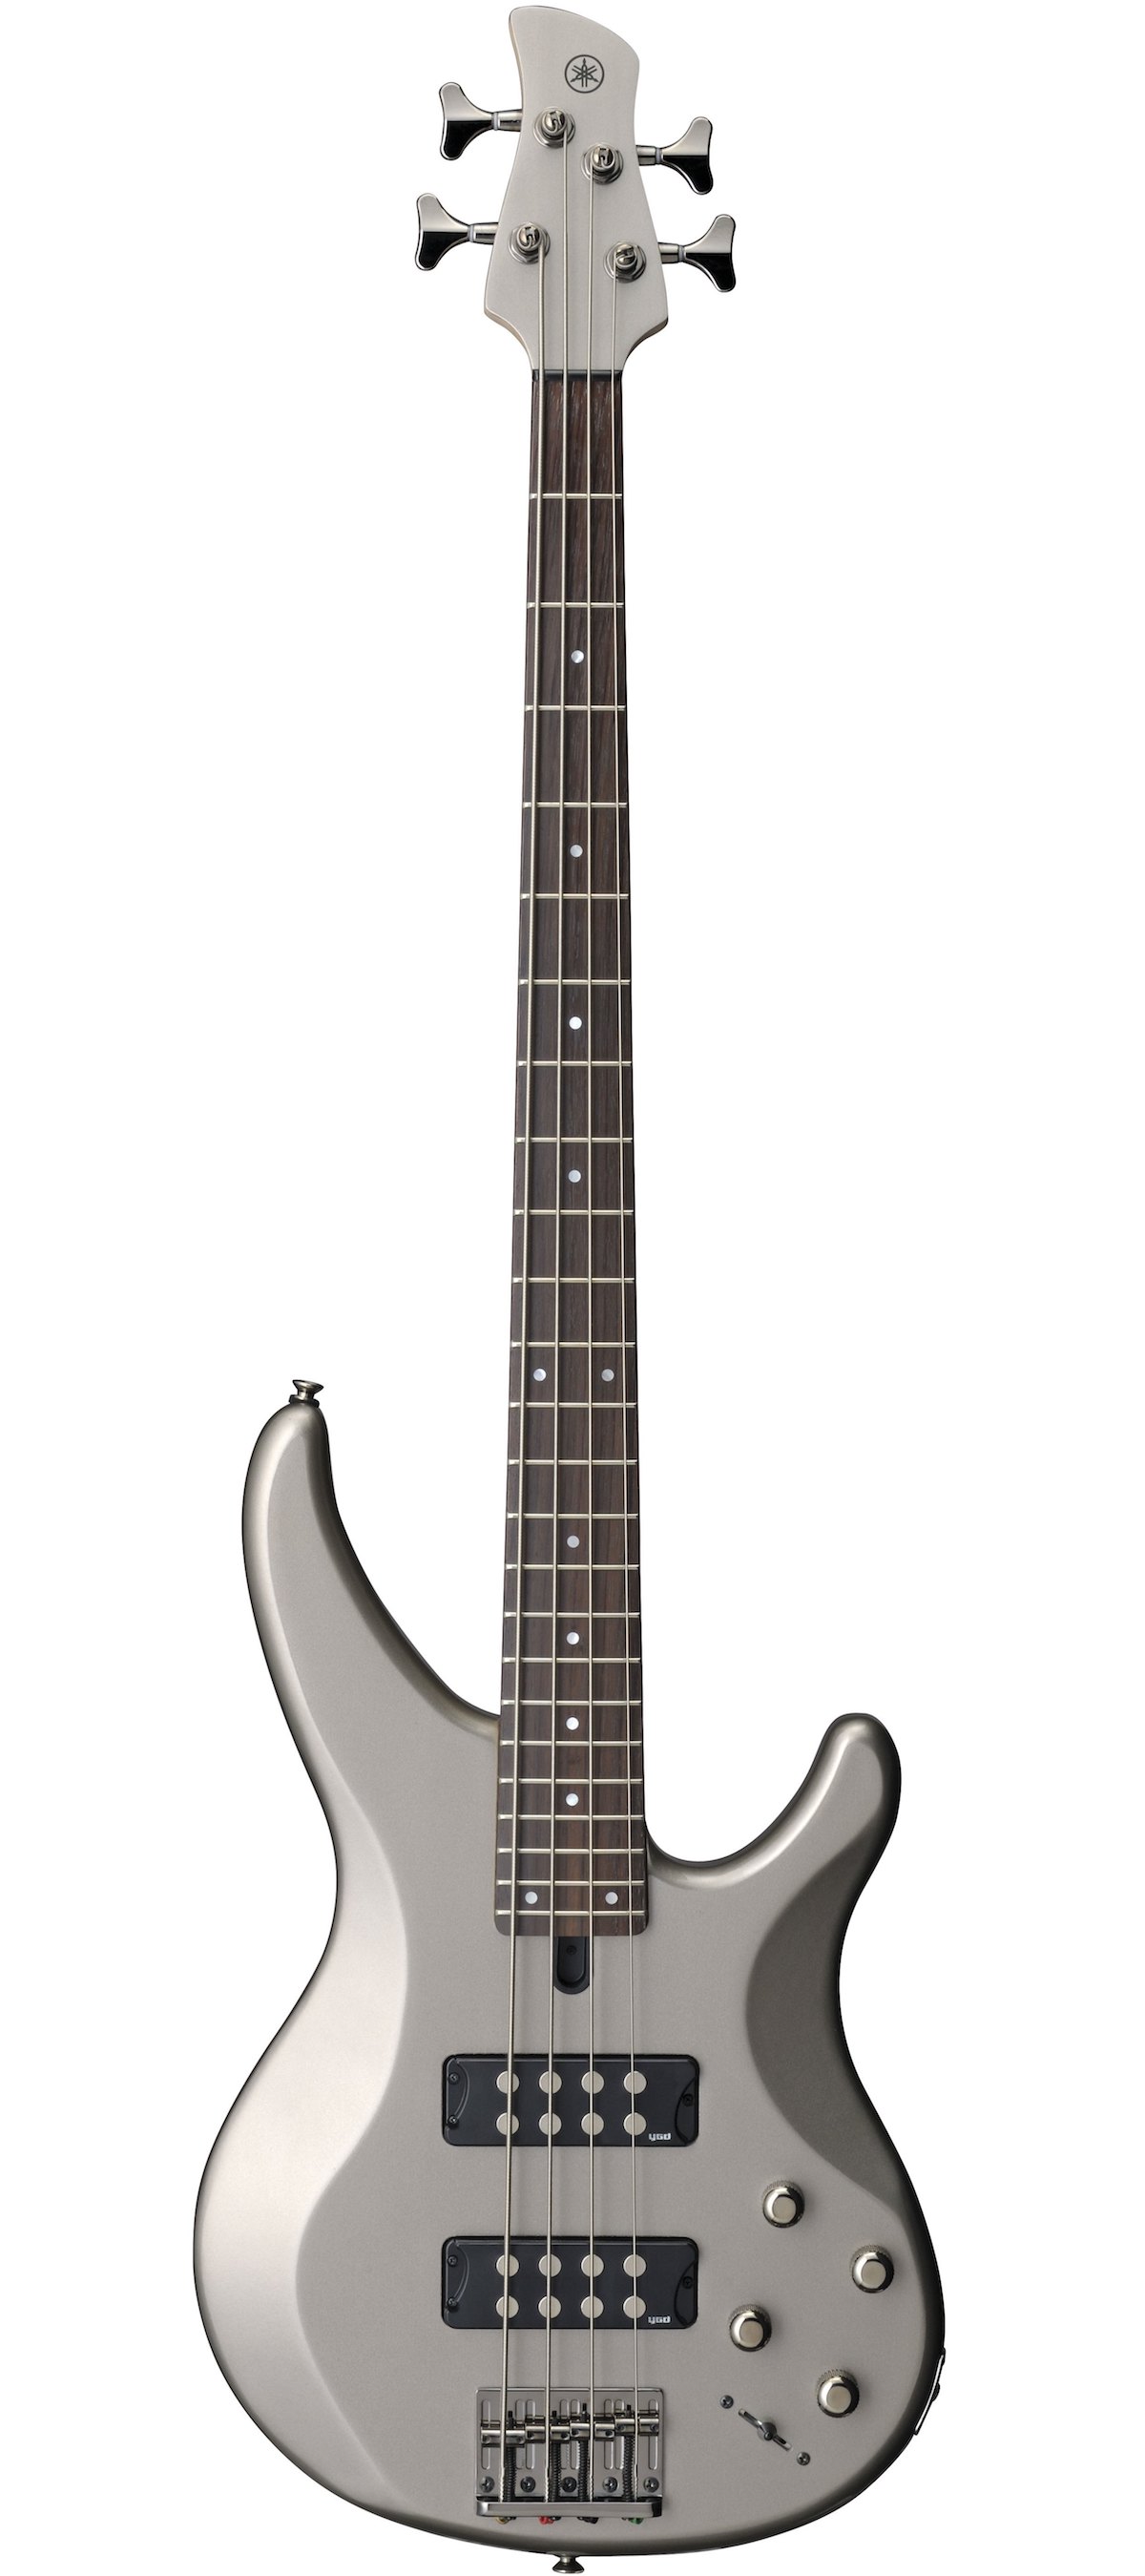 Yamaha TRBX304 electric guitar.